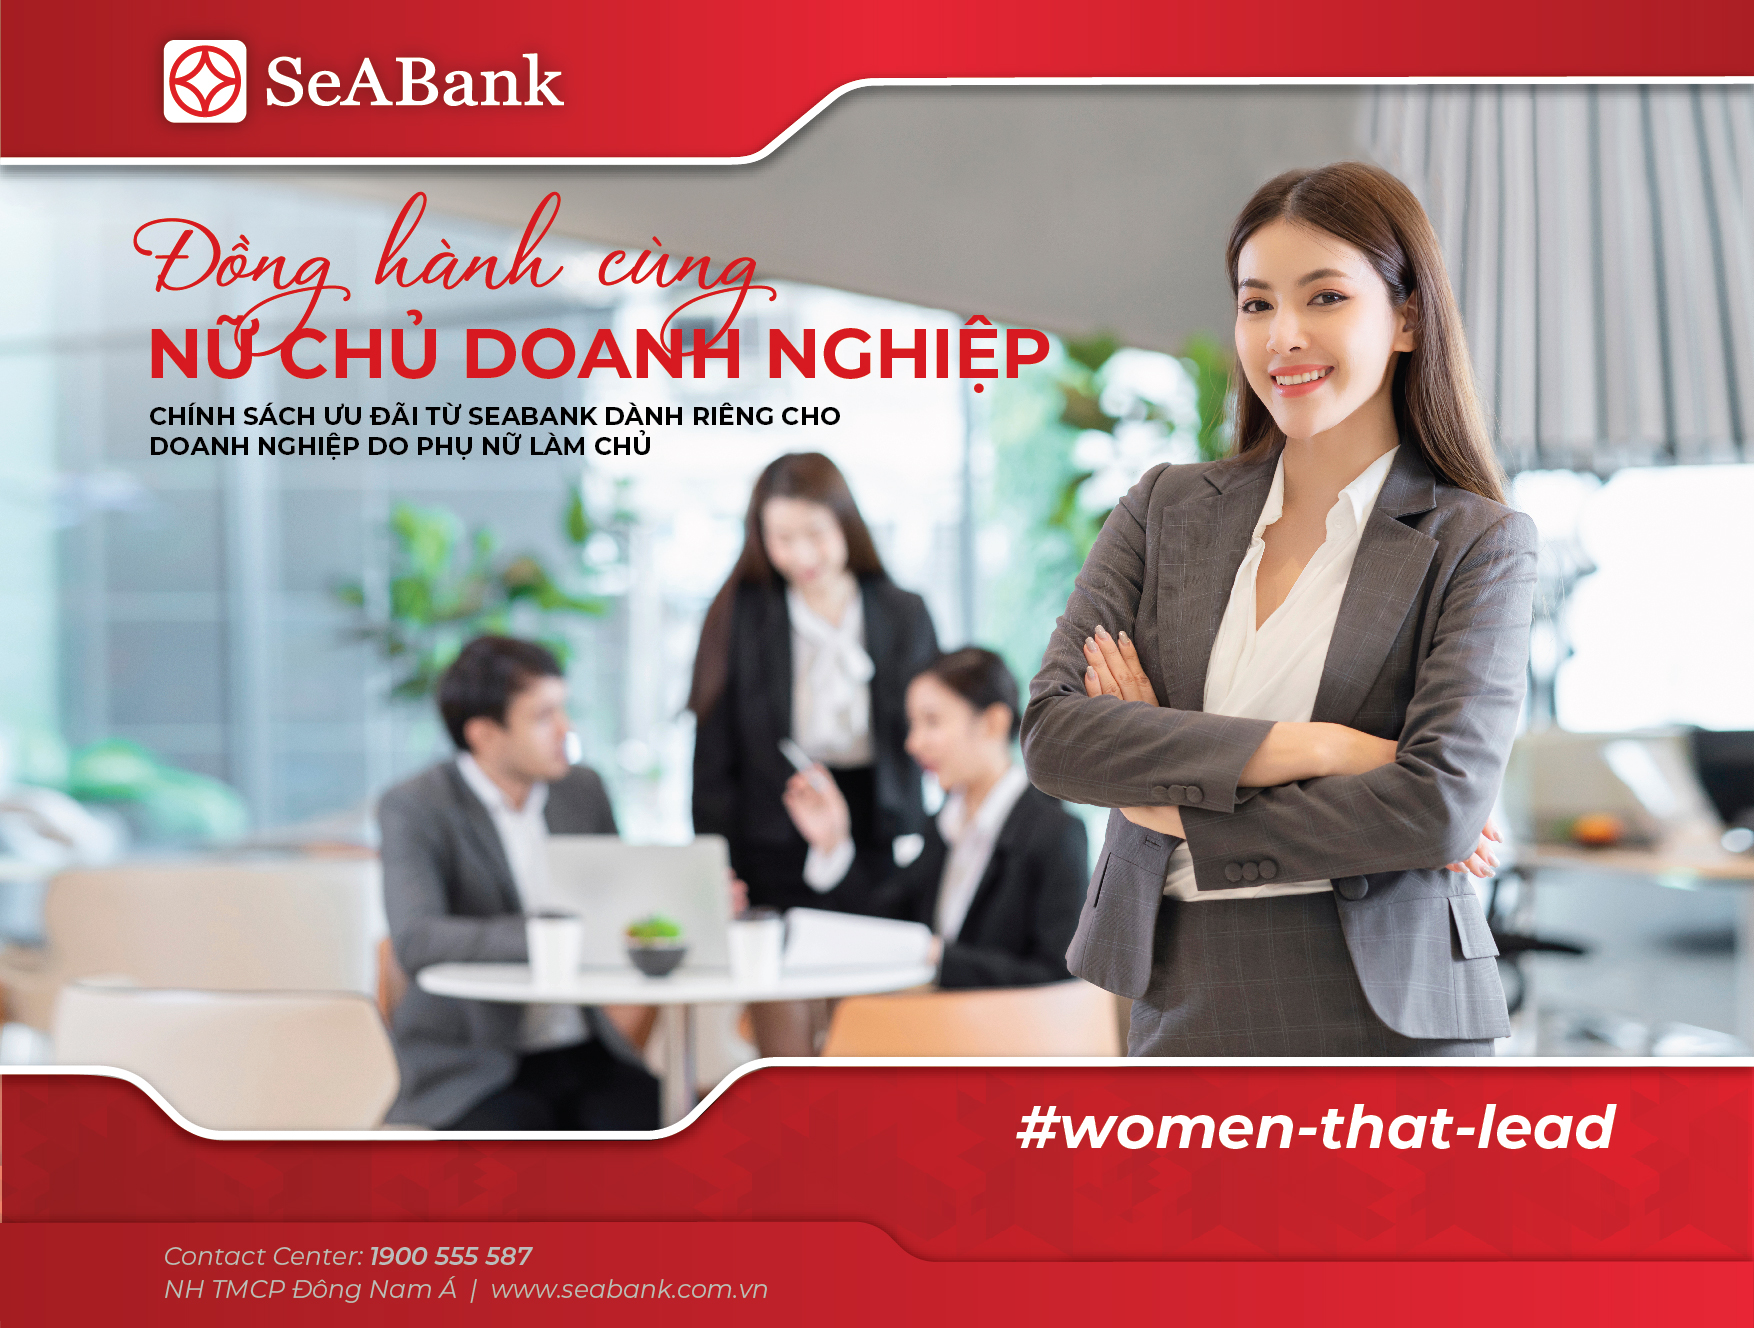 SeABank dành nhiều ưu đãi cho doanh nghiệp phụ nữ làm chủ - Ảnh 1.